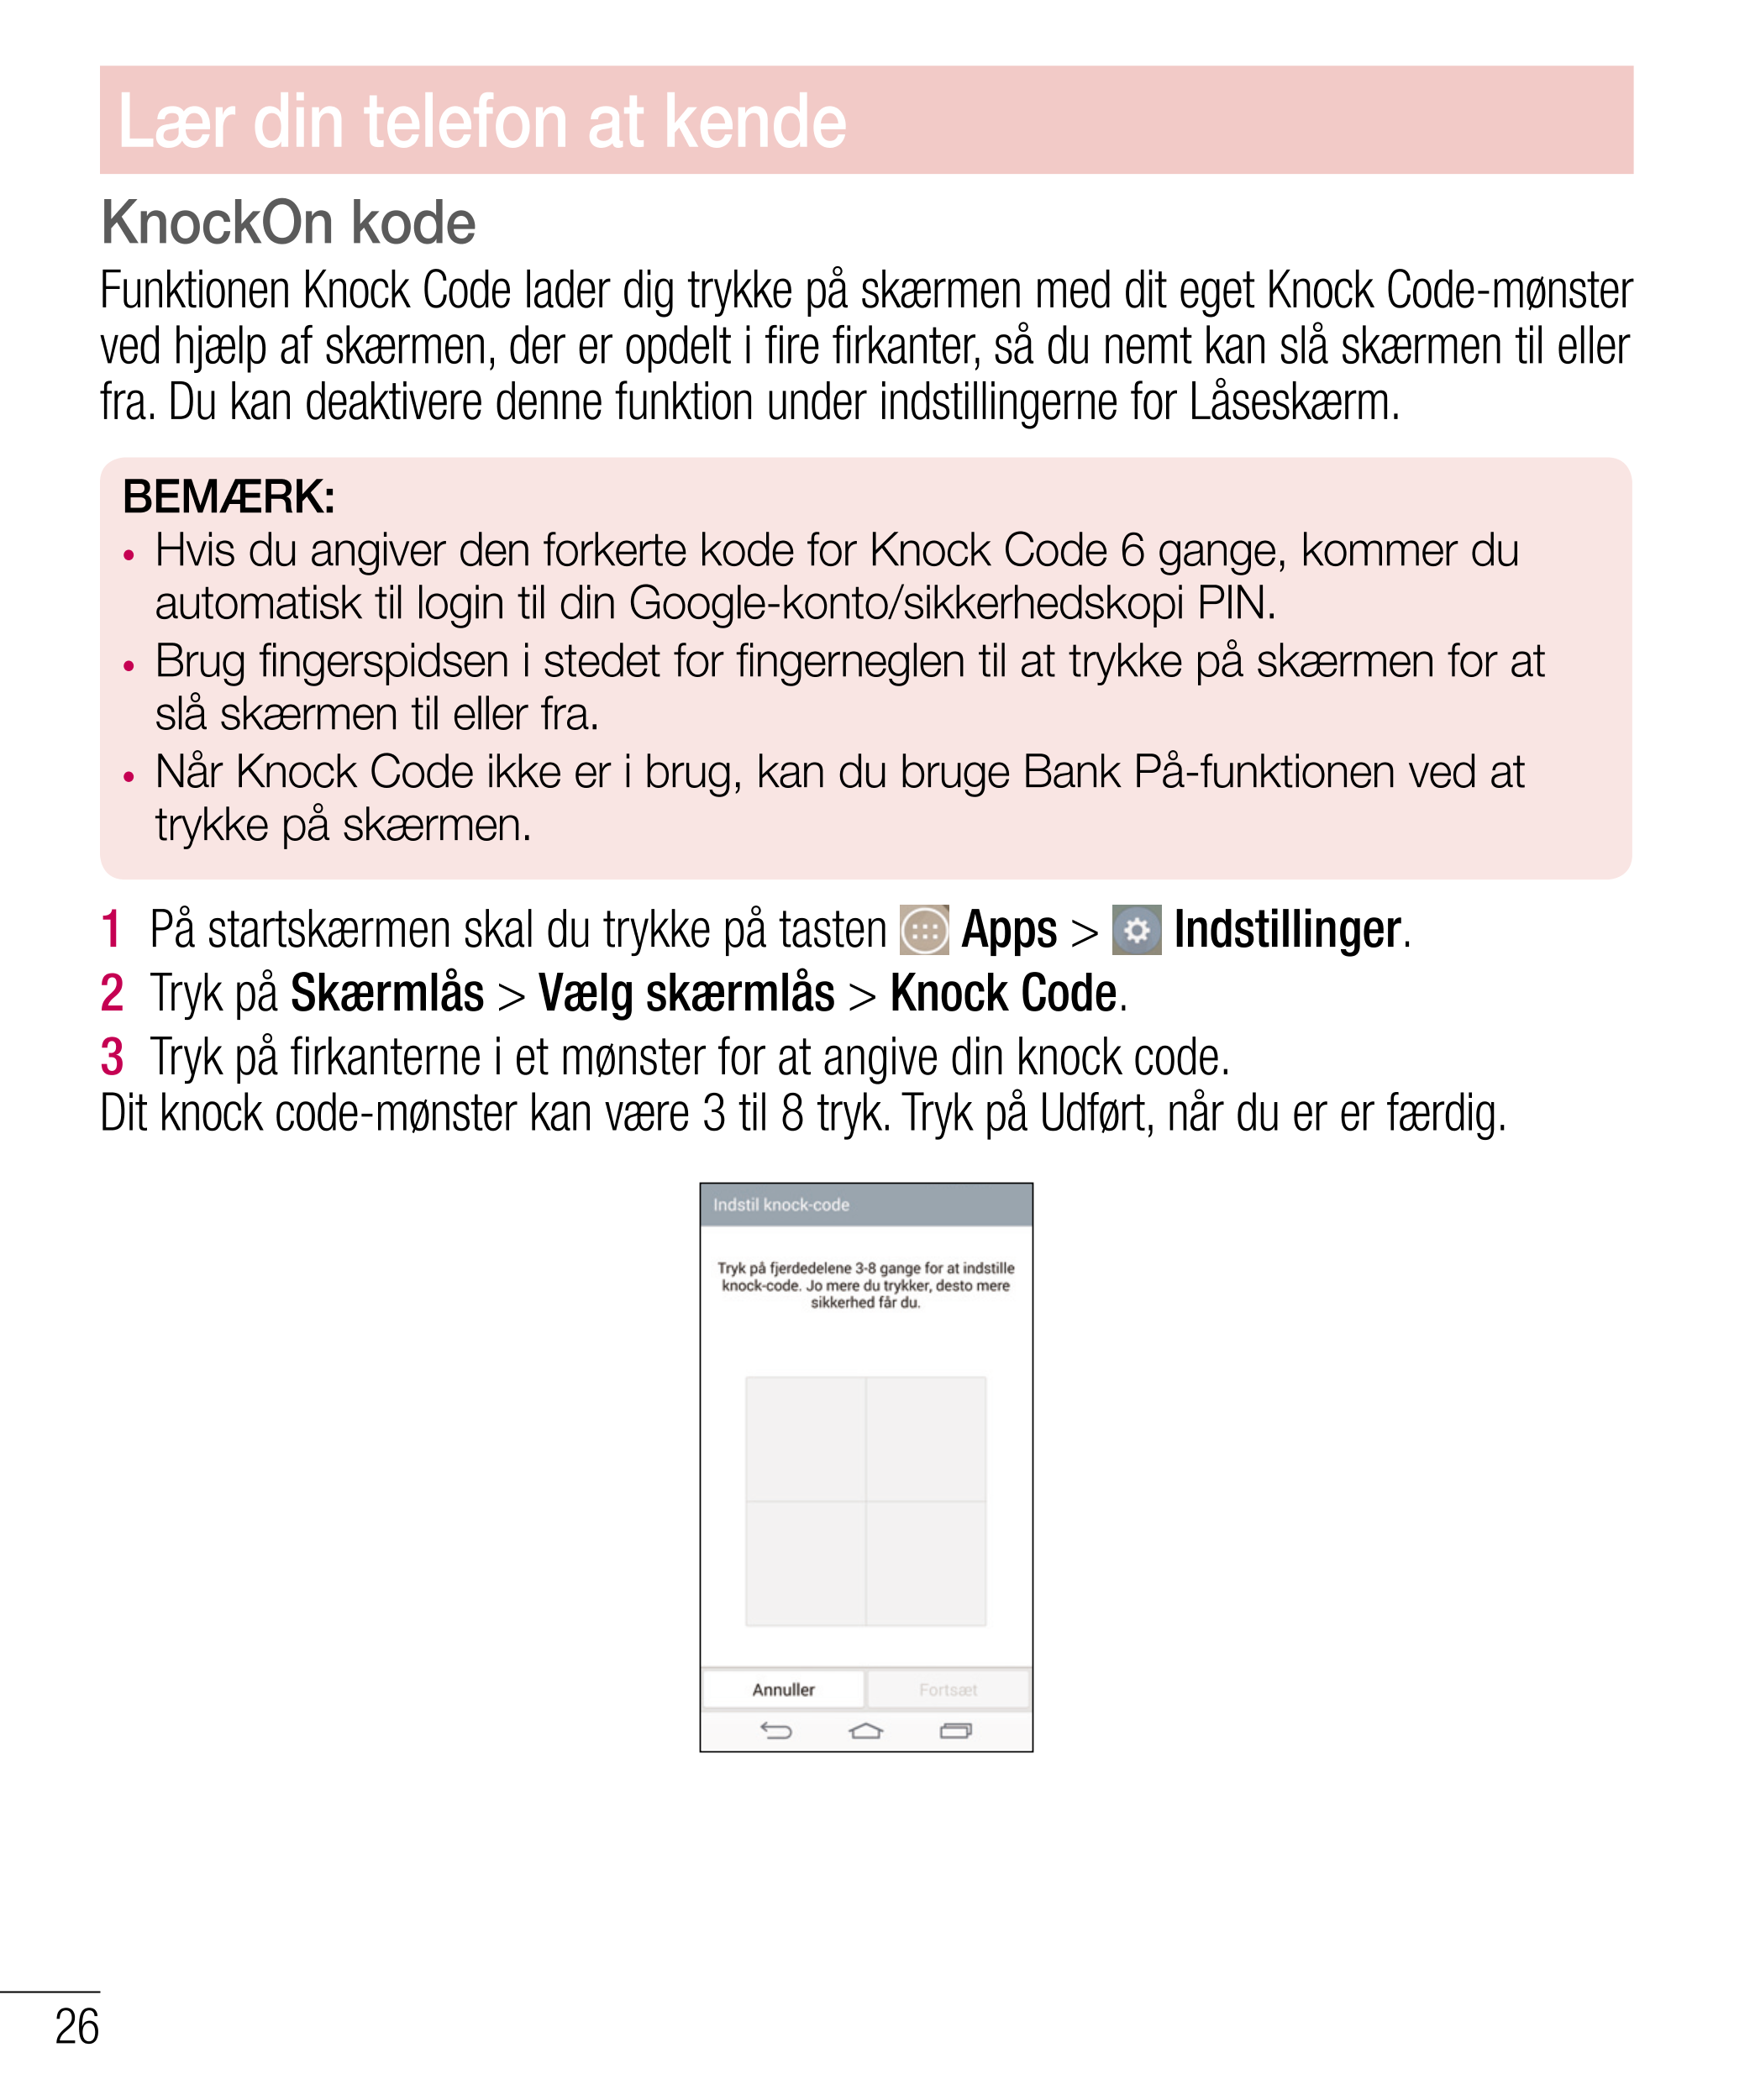 Lær din telefon at kende
KnockOn kode
Funktionen Knock Code lader dig trykke på skærmen med dit eget Knock Code-mønster 
ved hjæ